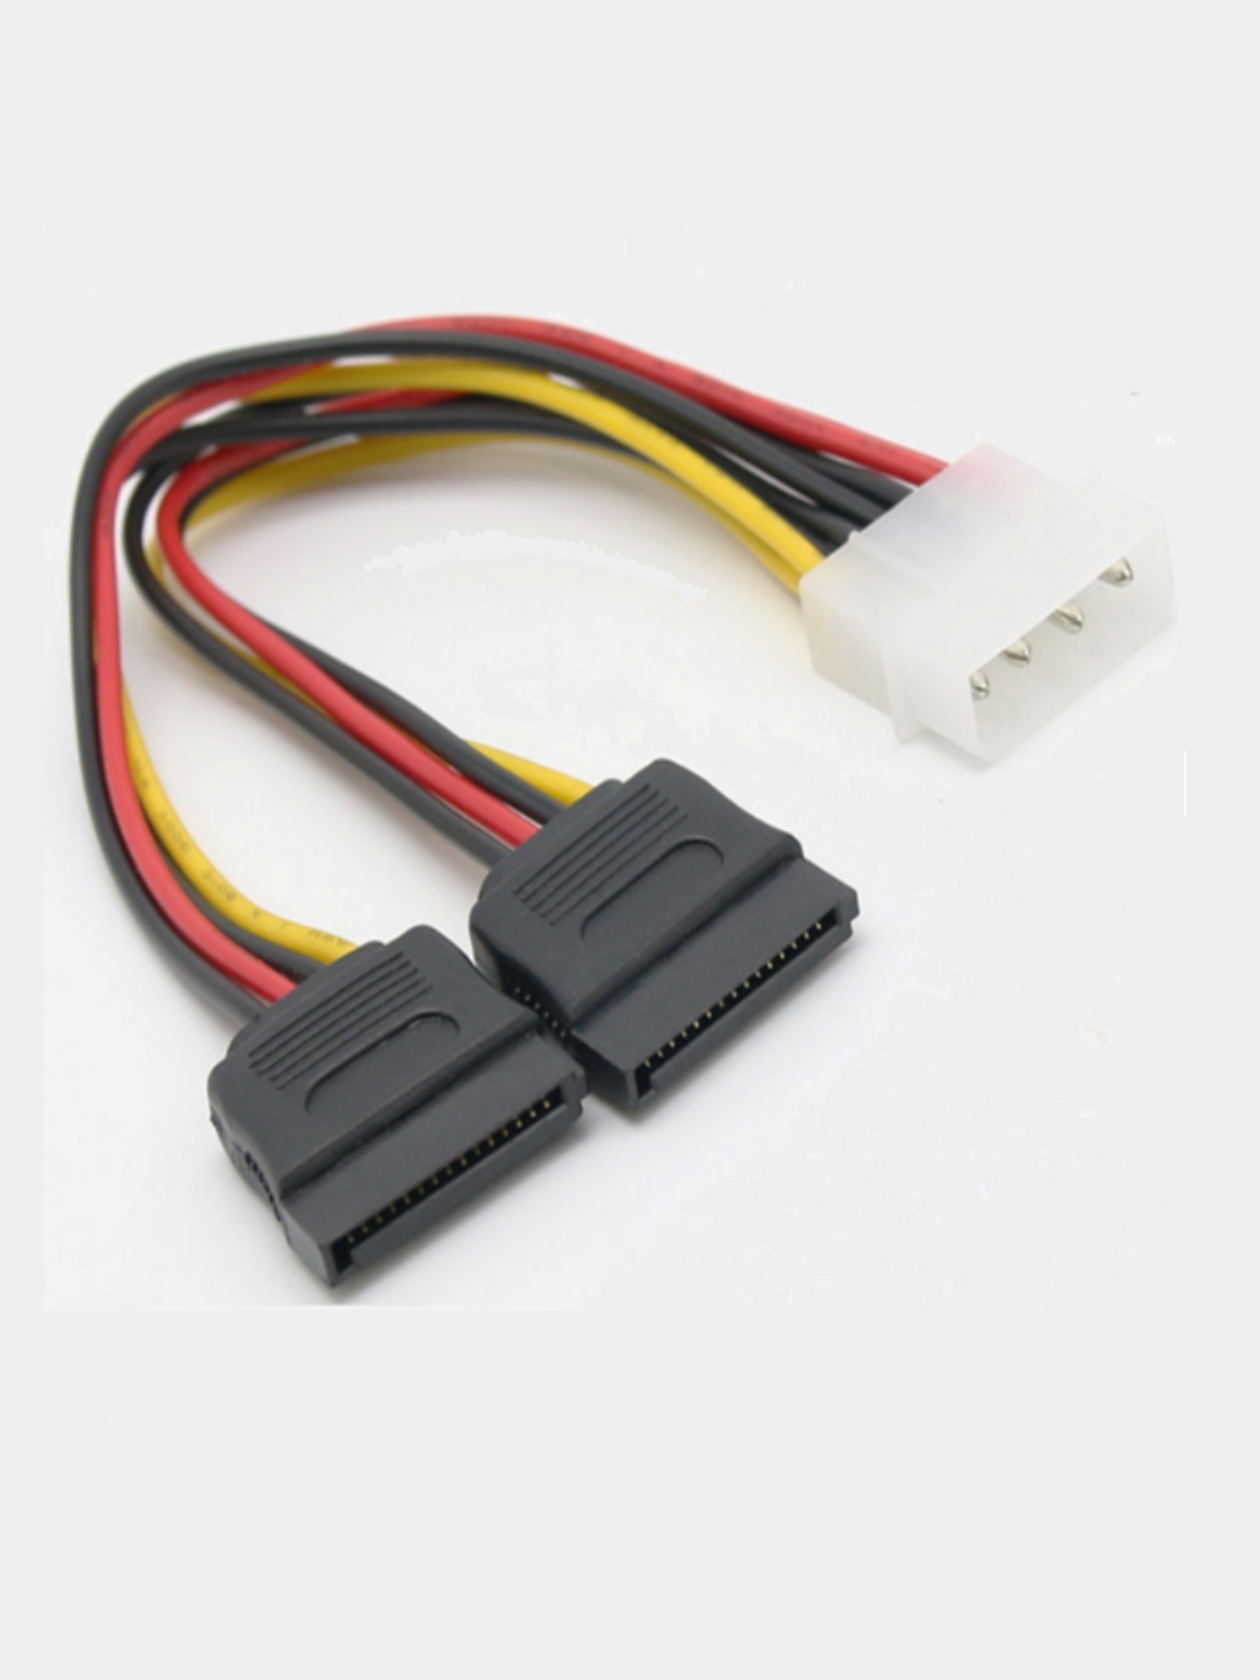  питания IDE SATA для кабеля жесткого диска компьютера за .